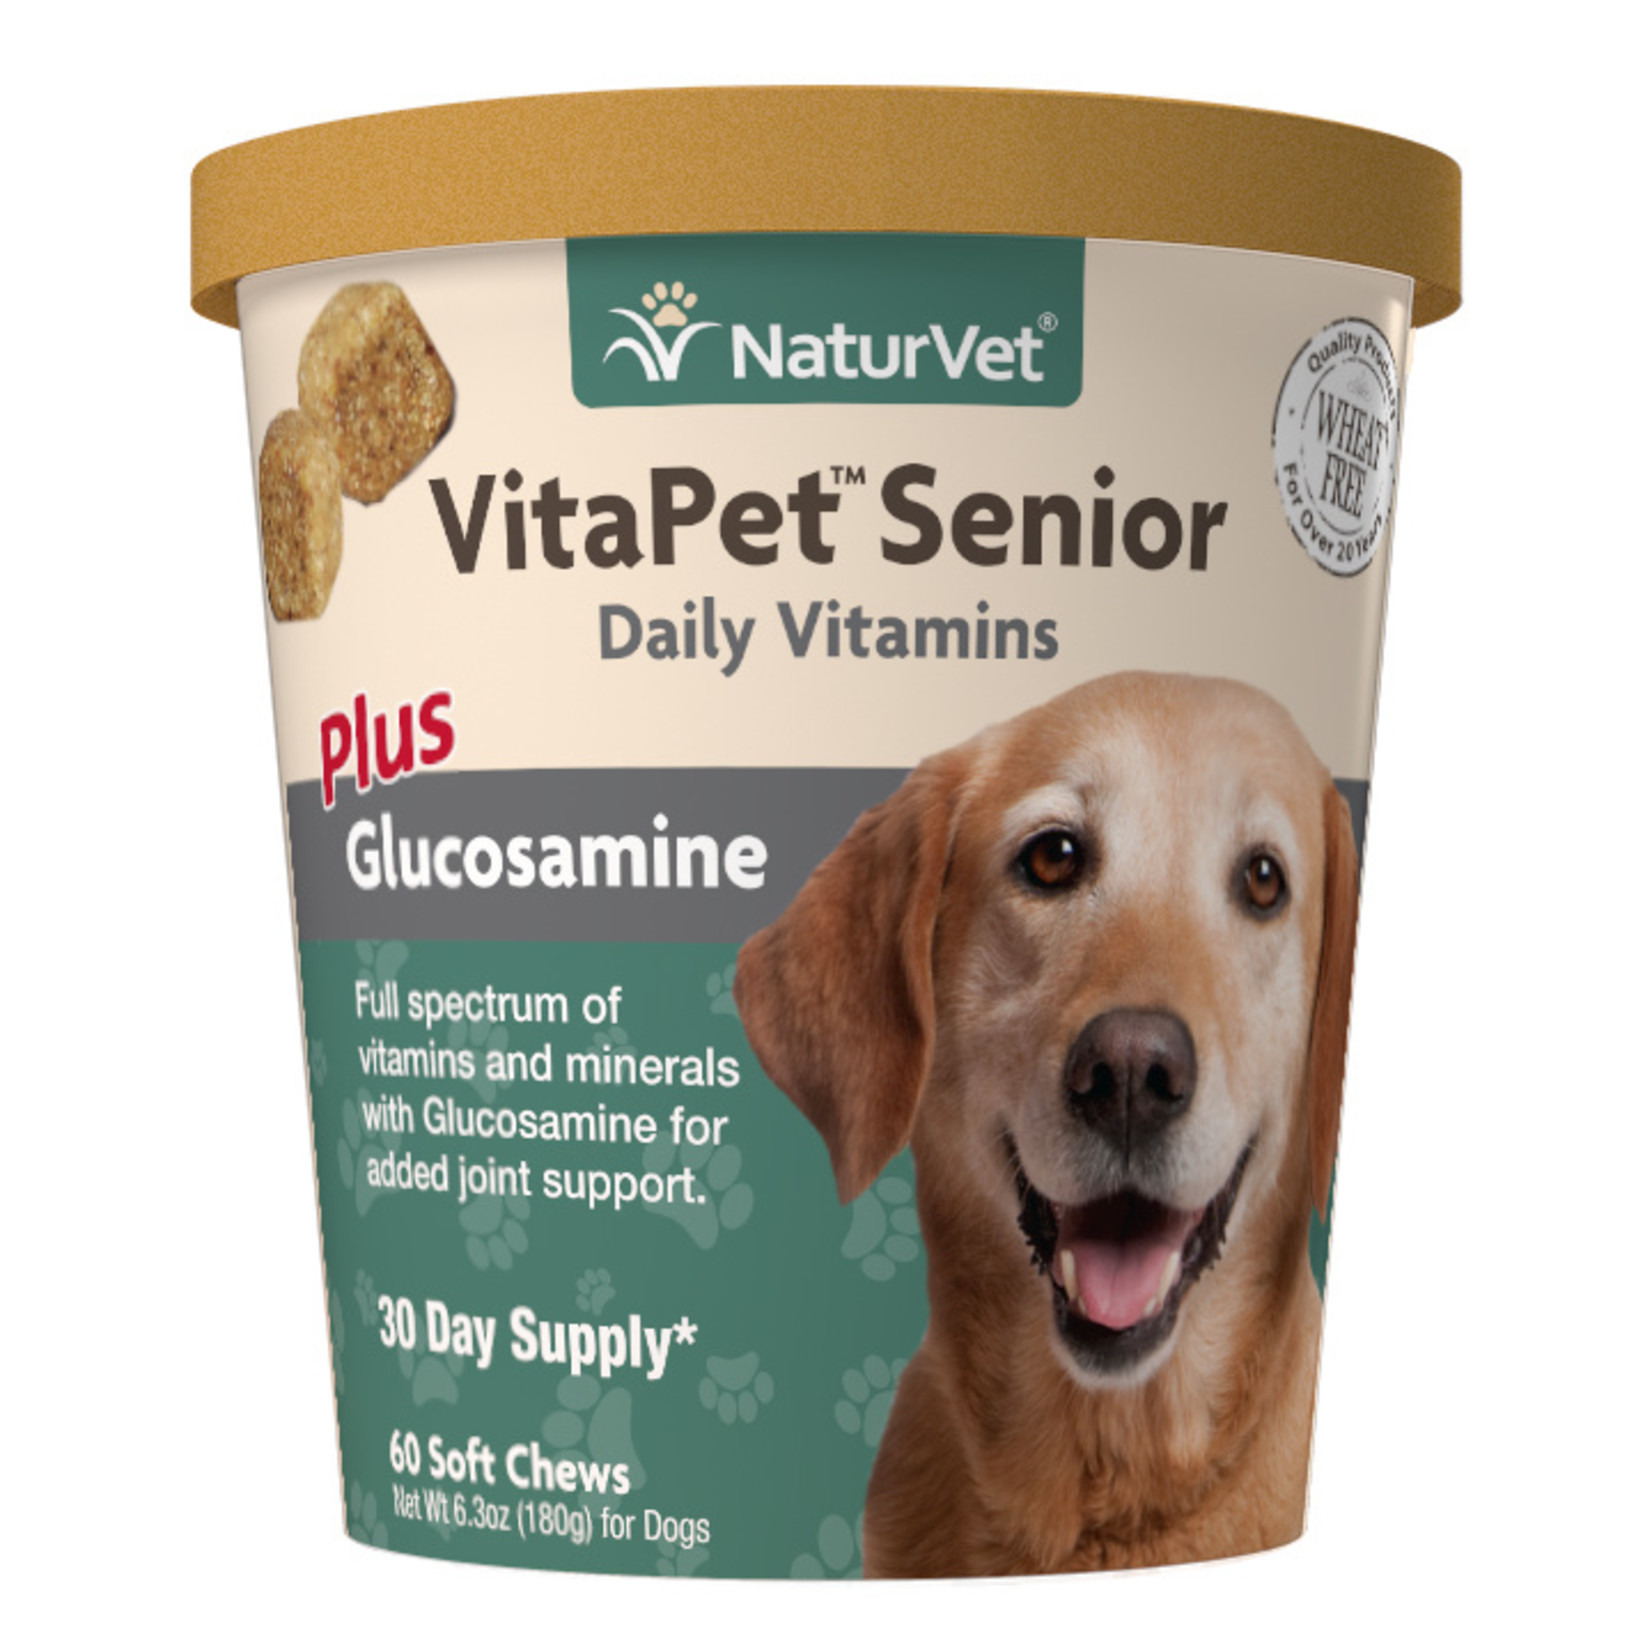 NaturVet NaturVet VitaPet Senior Daily Vitamins + Glucosamine Soft Chews 60ct